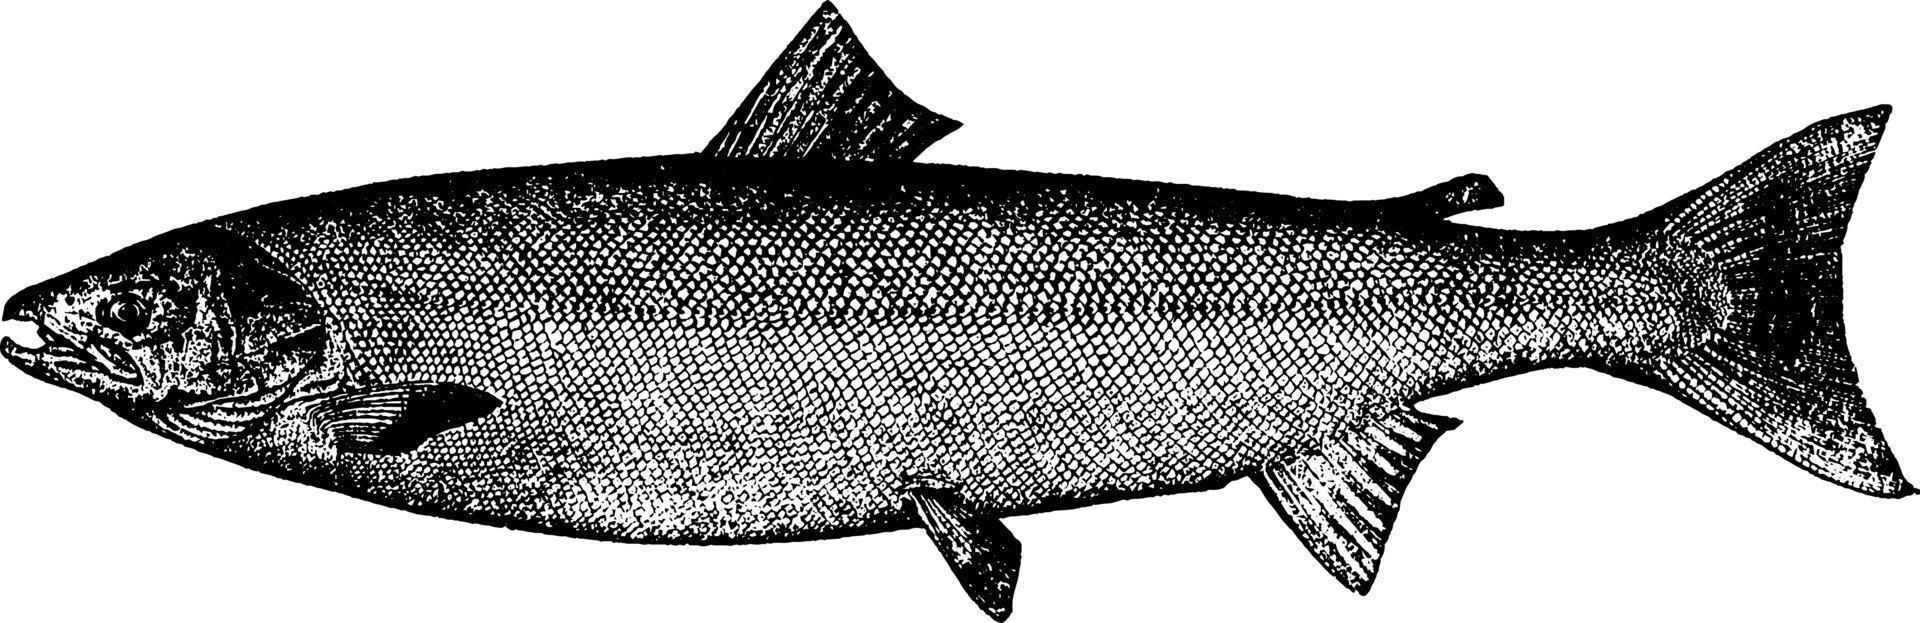 salmão do Atlântico, ilustração vintage. vetor